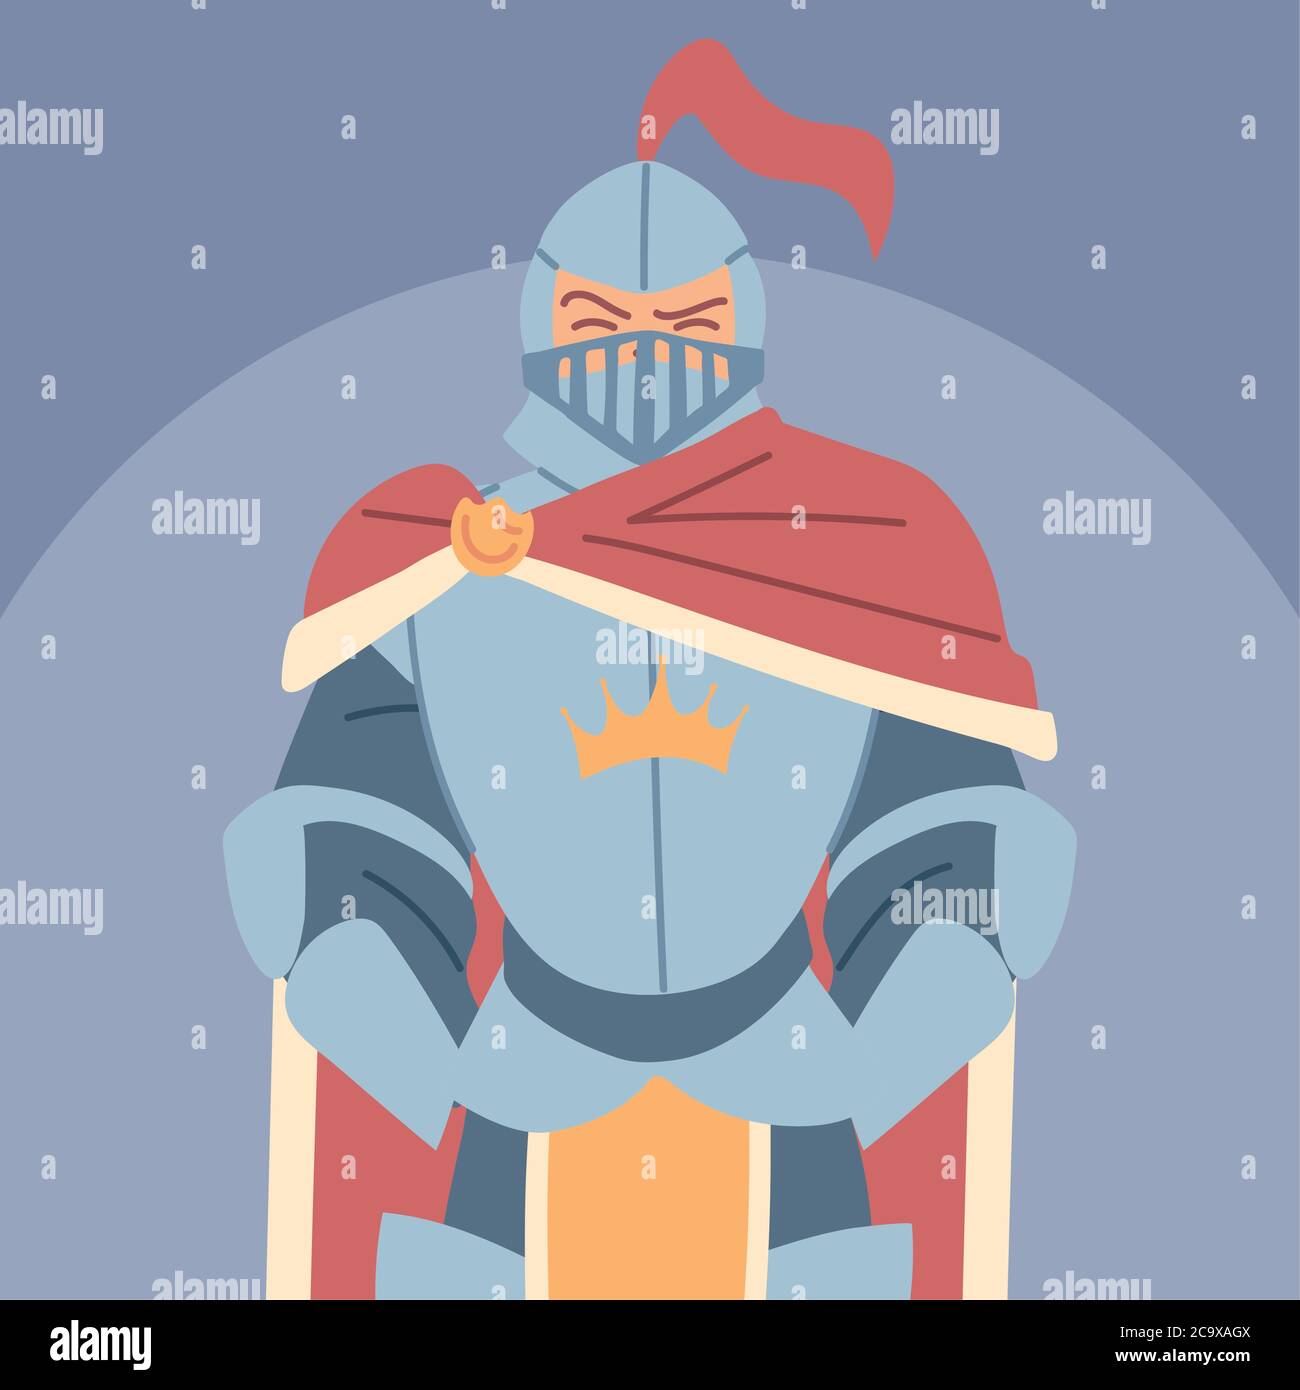 medieval knight in armor, knight costume vector illustration design Stock Vector